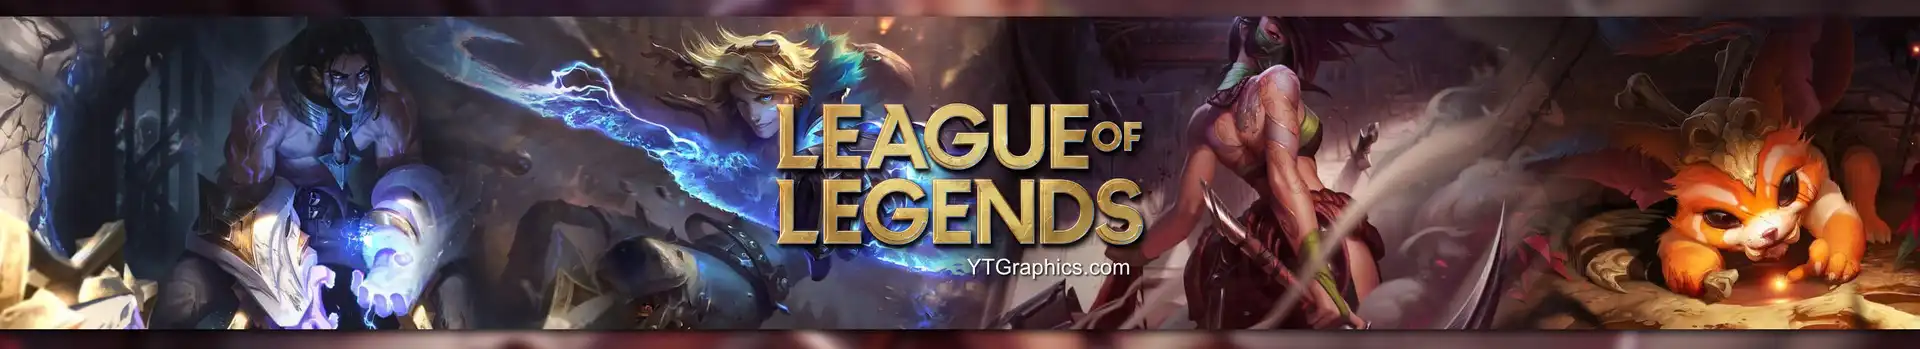 League of Legends preview